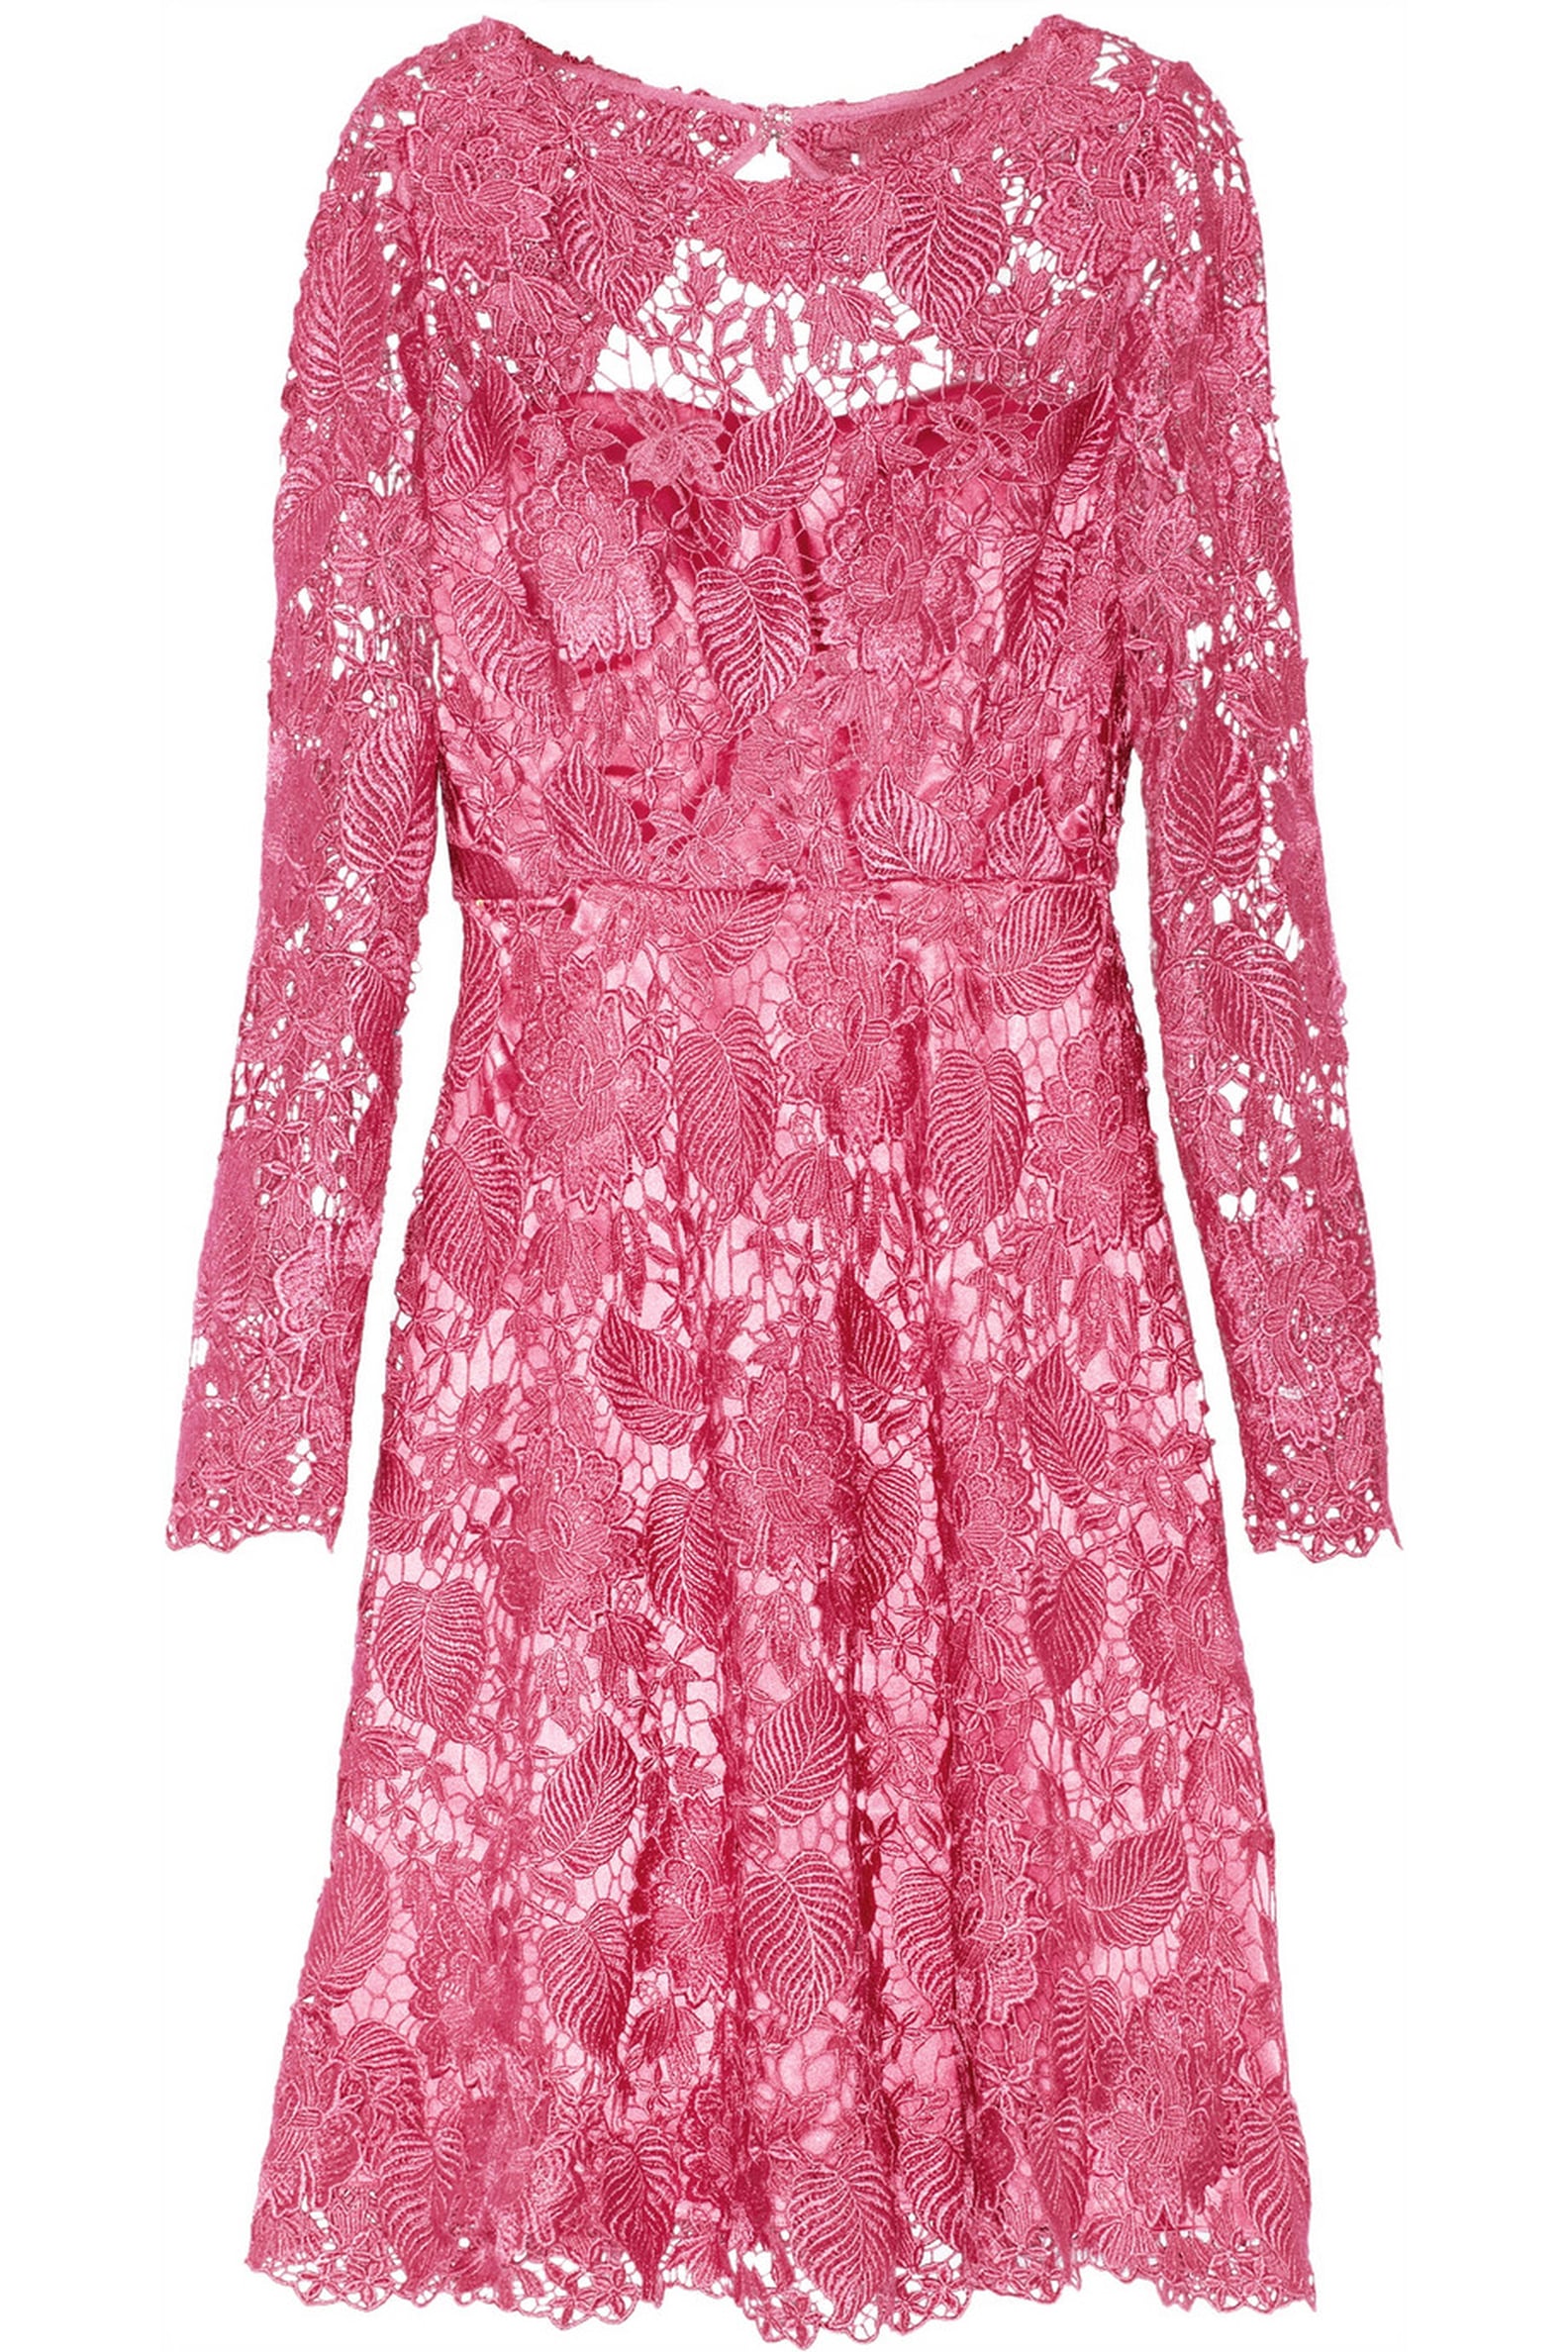 Pink Cocktail Dresses | POPSUGAR Fashion